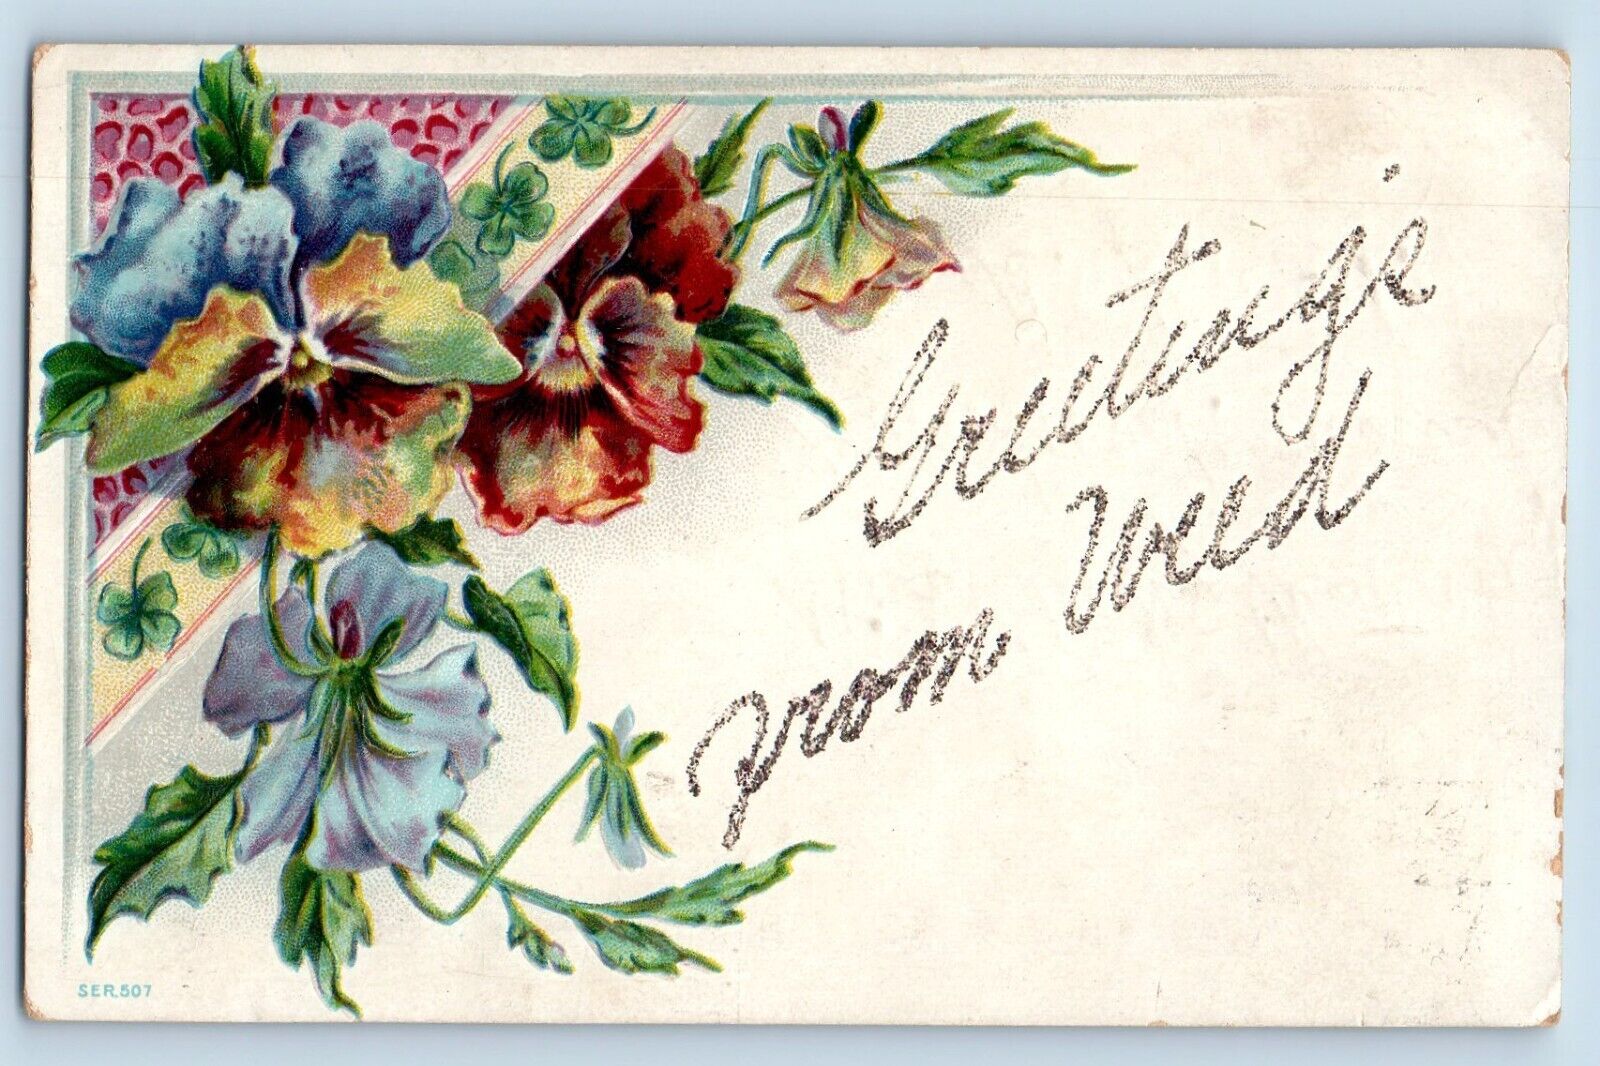 Weed California Postcard Greetings Flowers Glitter 1909 Vintage Antique Vintage